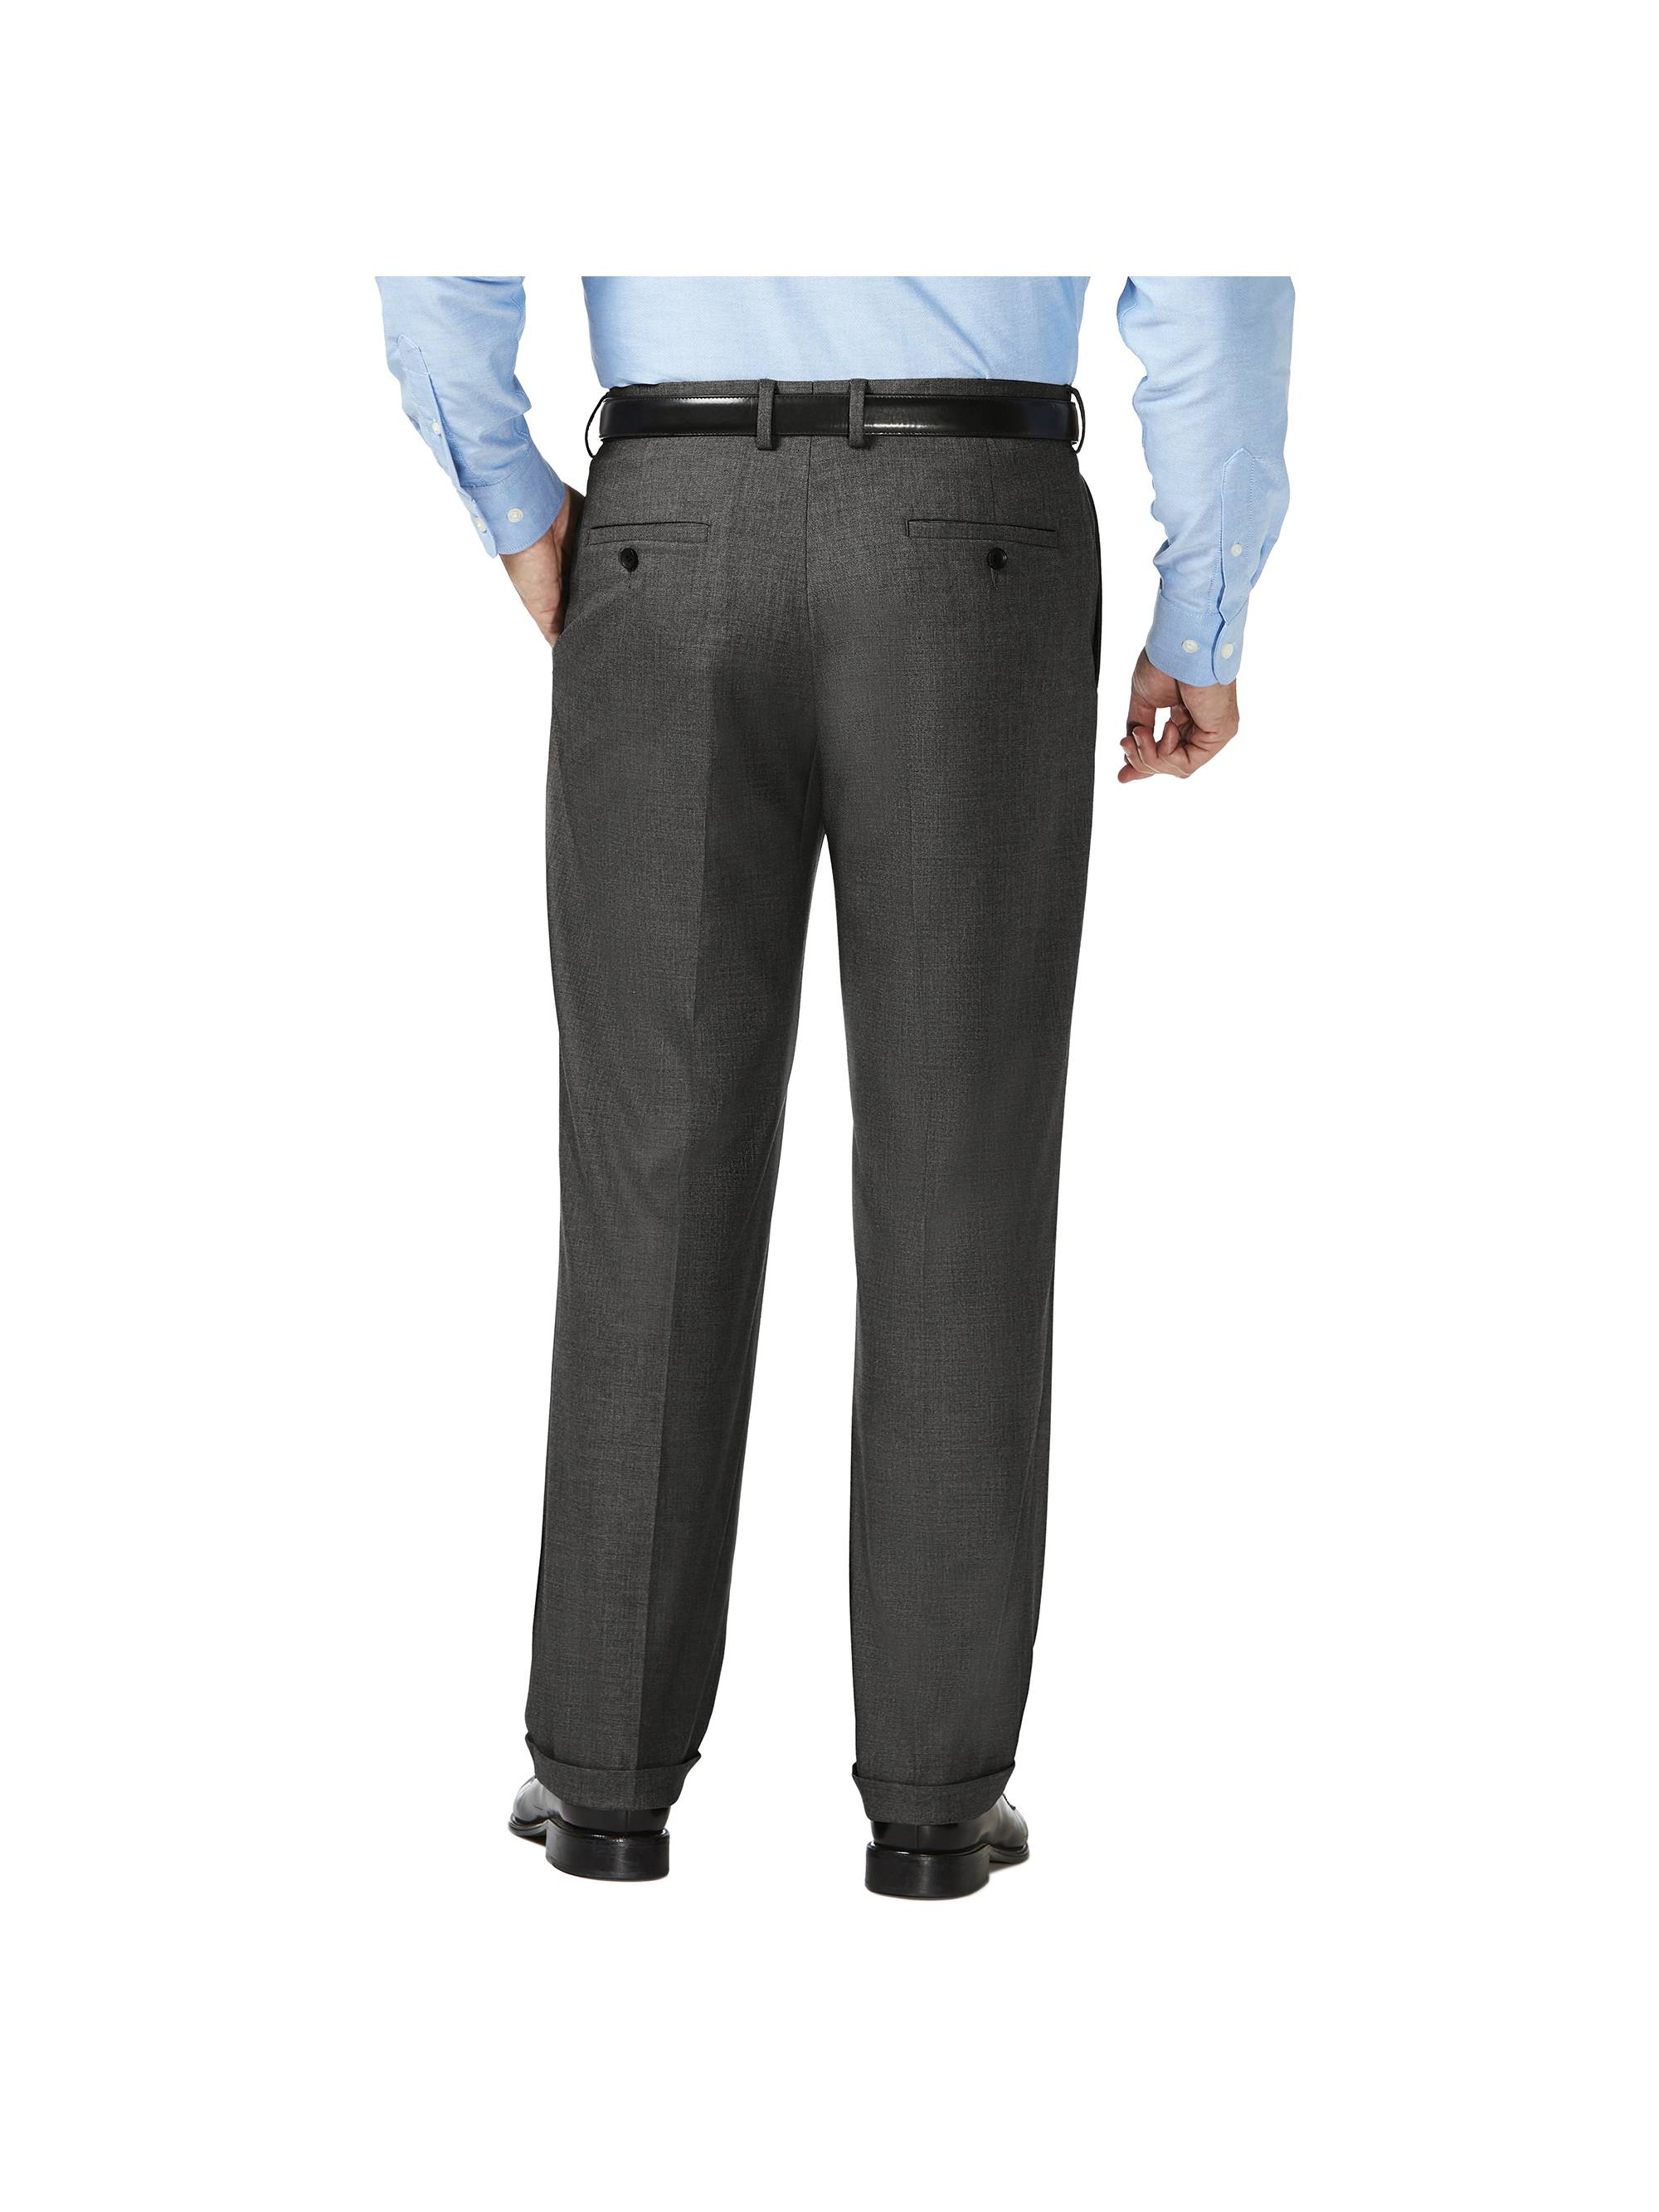 JM Haggar Men's Big & Tall Sharkskin Pleat Front Dress Pant  Classic Fit HD90654 - image 3 of 9